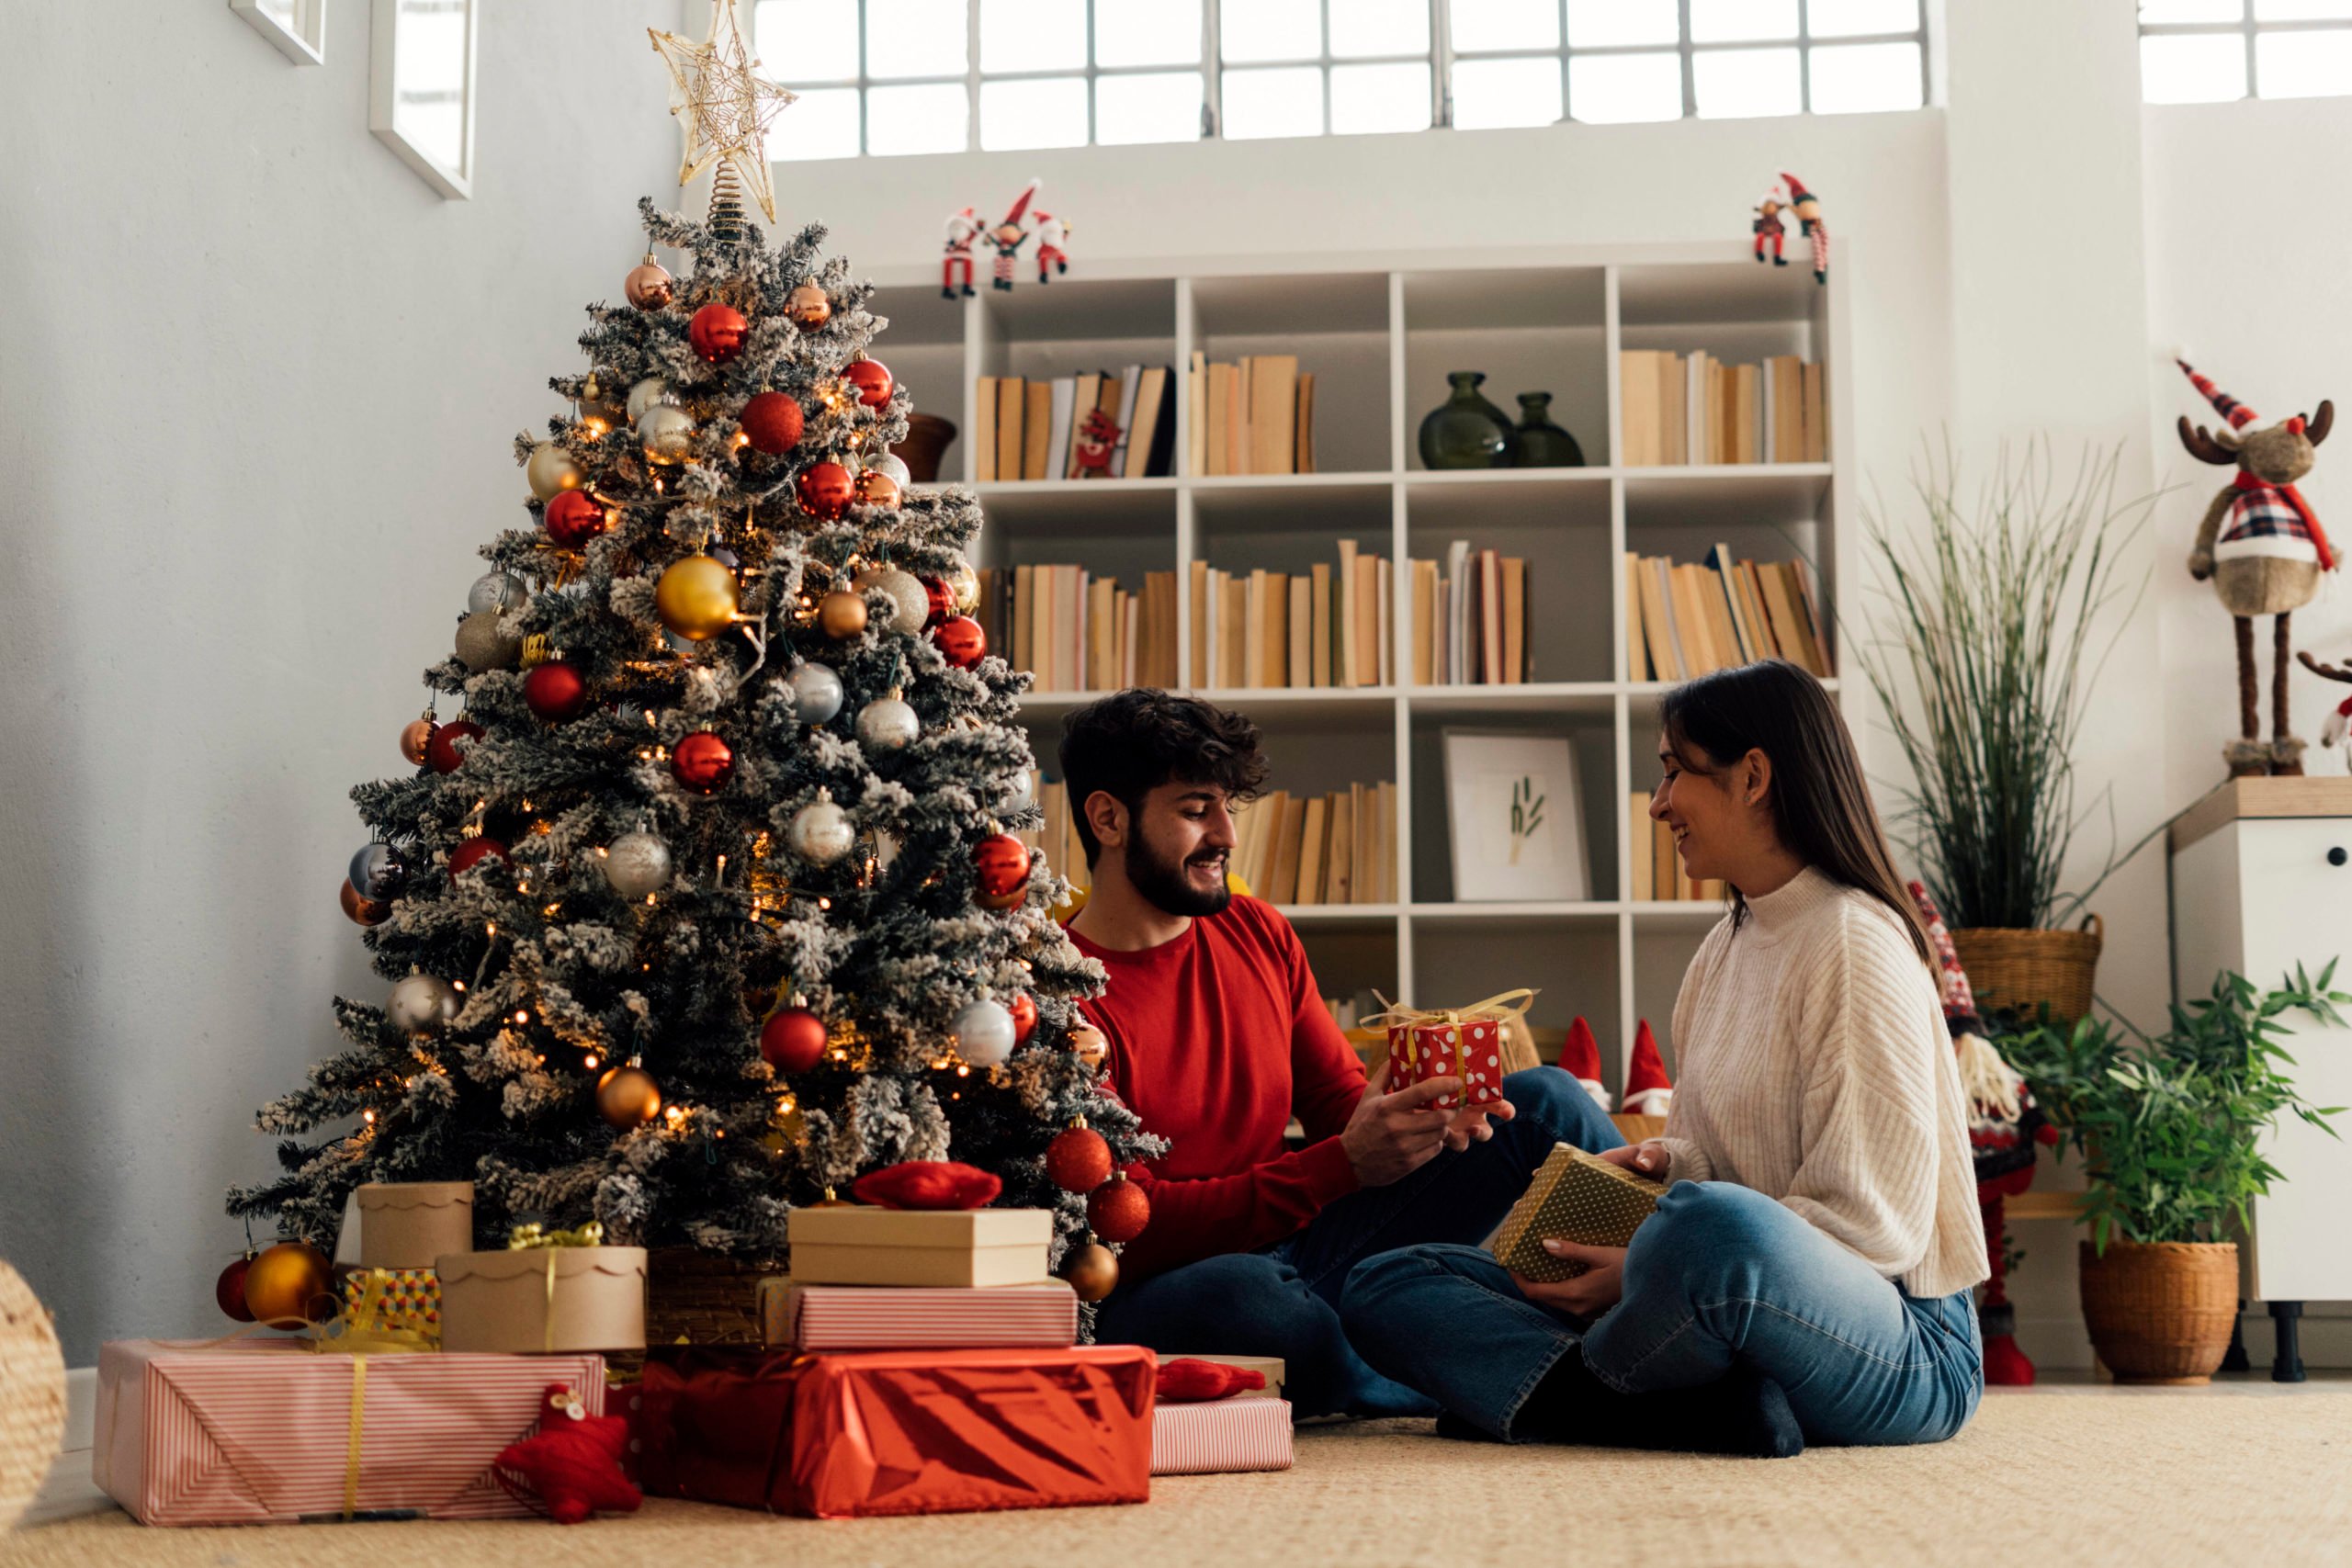 Geschenke zu Weihnachten: Wir haben einige Tipps, was ihr euren Liebsten unter den Weihnachtsbaum legen könnt. Foto: Imago/Westend61